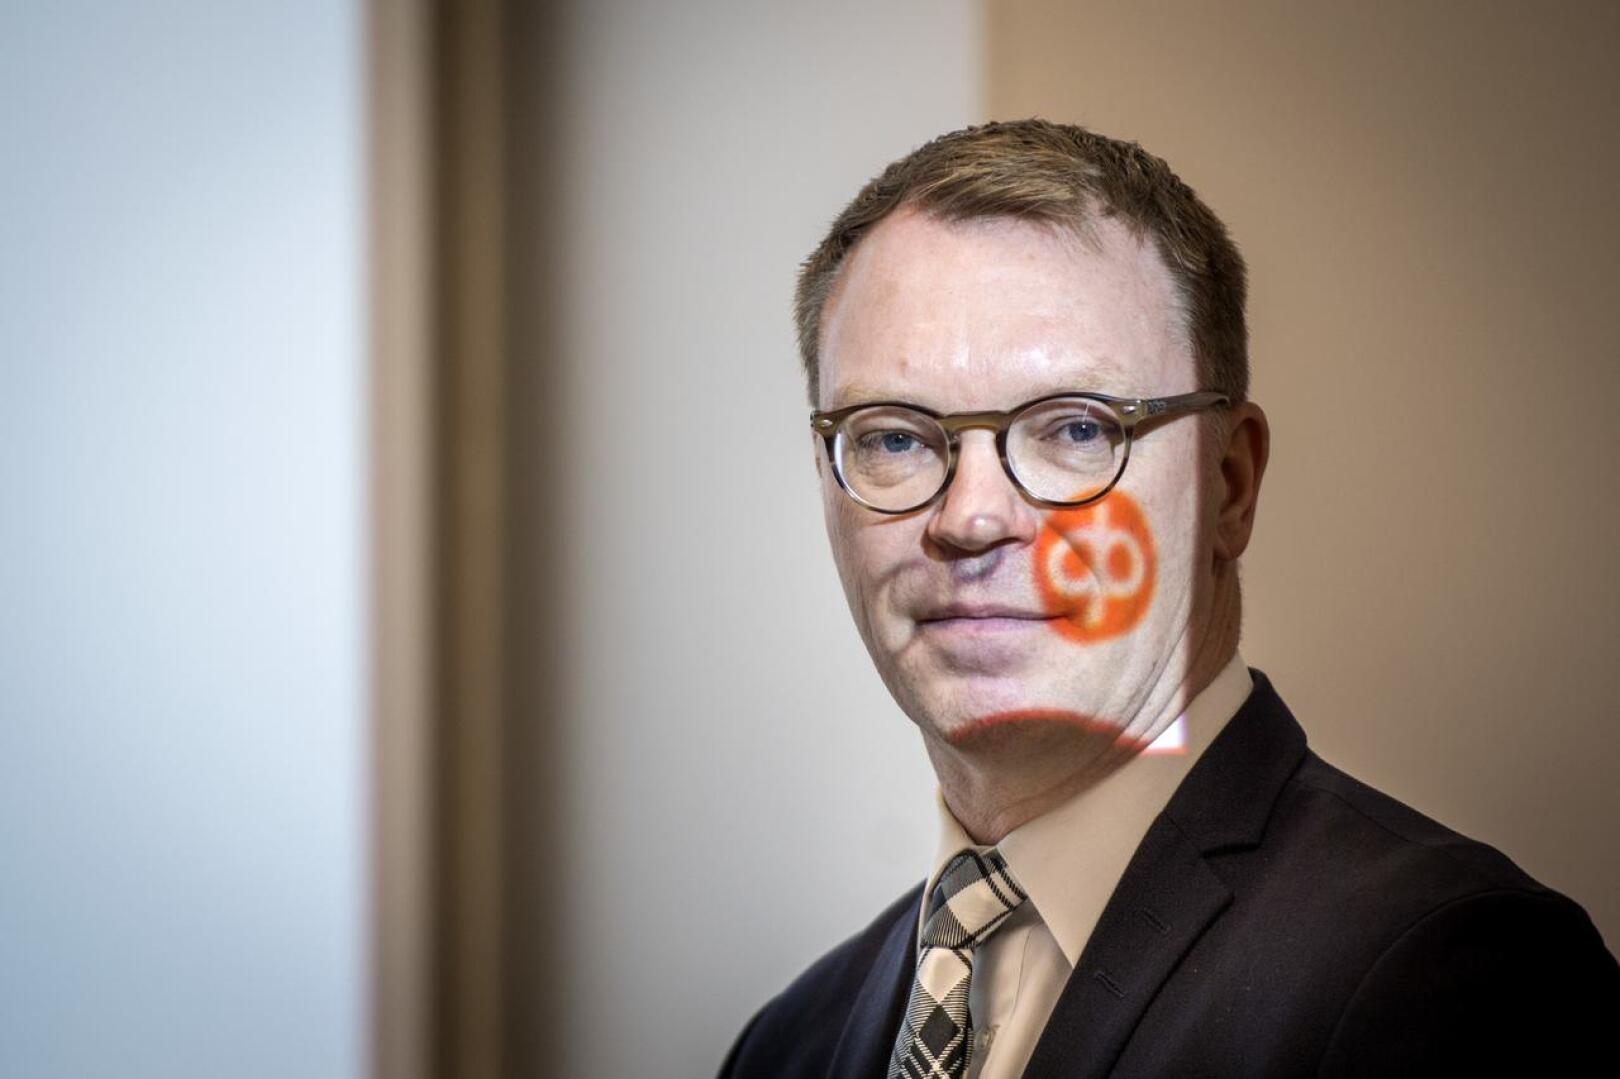 Keski-Pohjanmaan Osuuspankin toimitusjohtaja Jyrki Rantala. Kuva on viime vuoden helmikuulta.